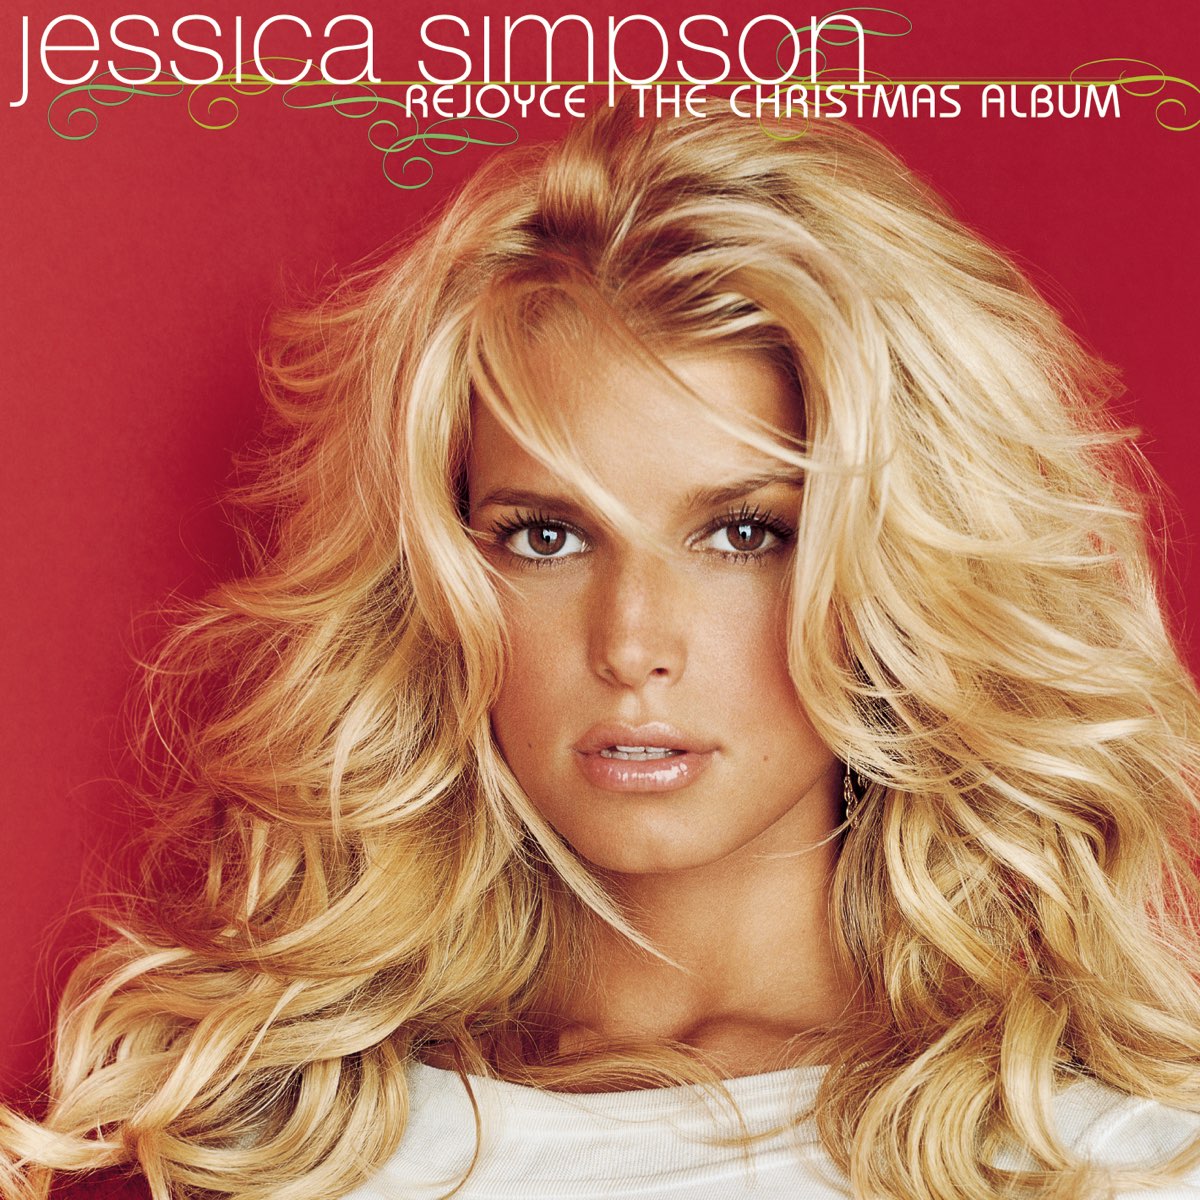 Jessica Simpson — Rejoyce: The Christmas Album cover artwork